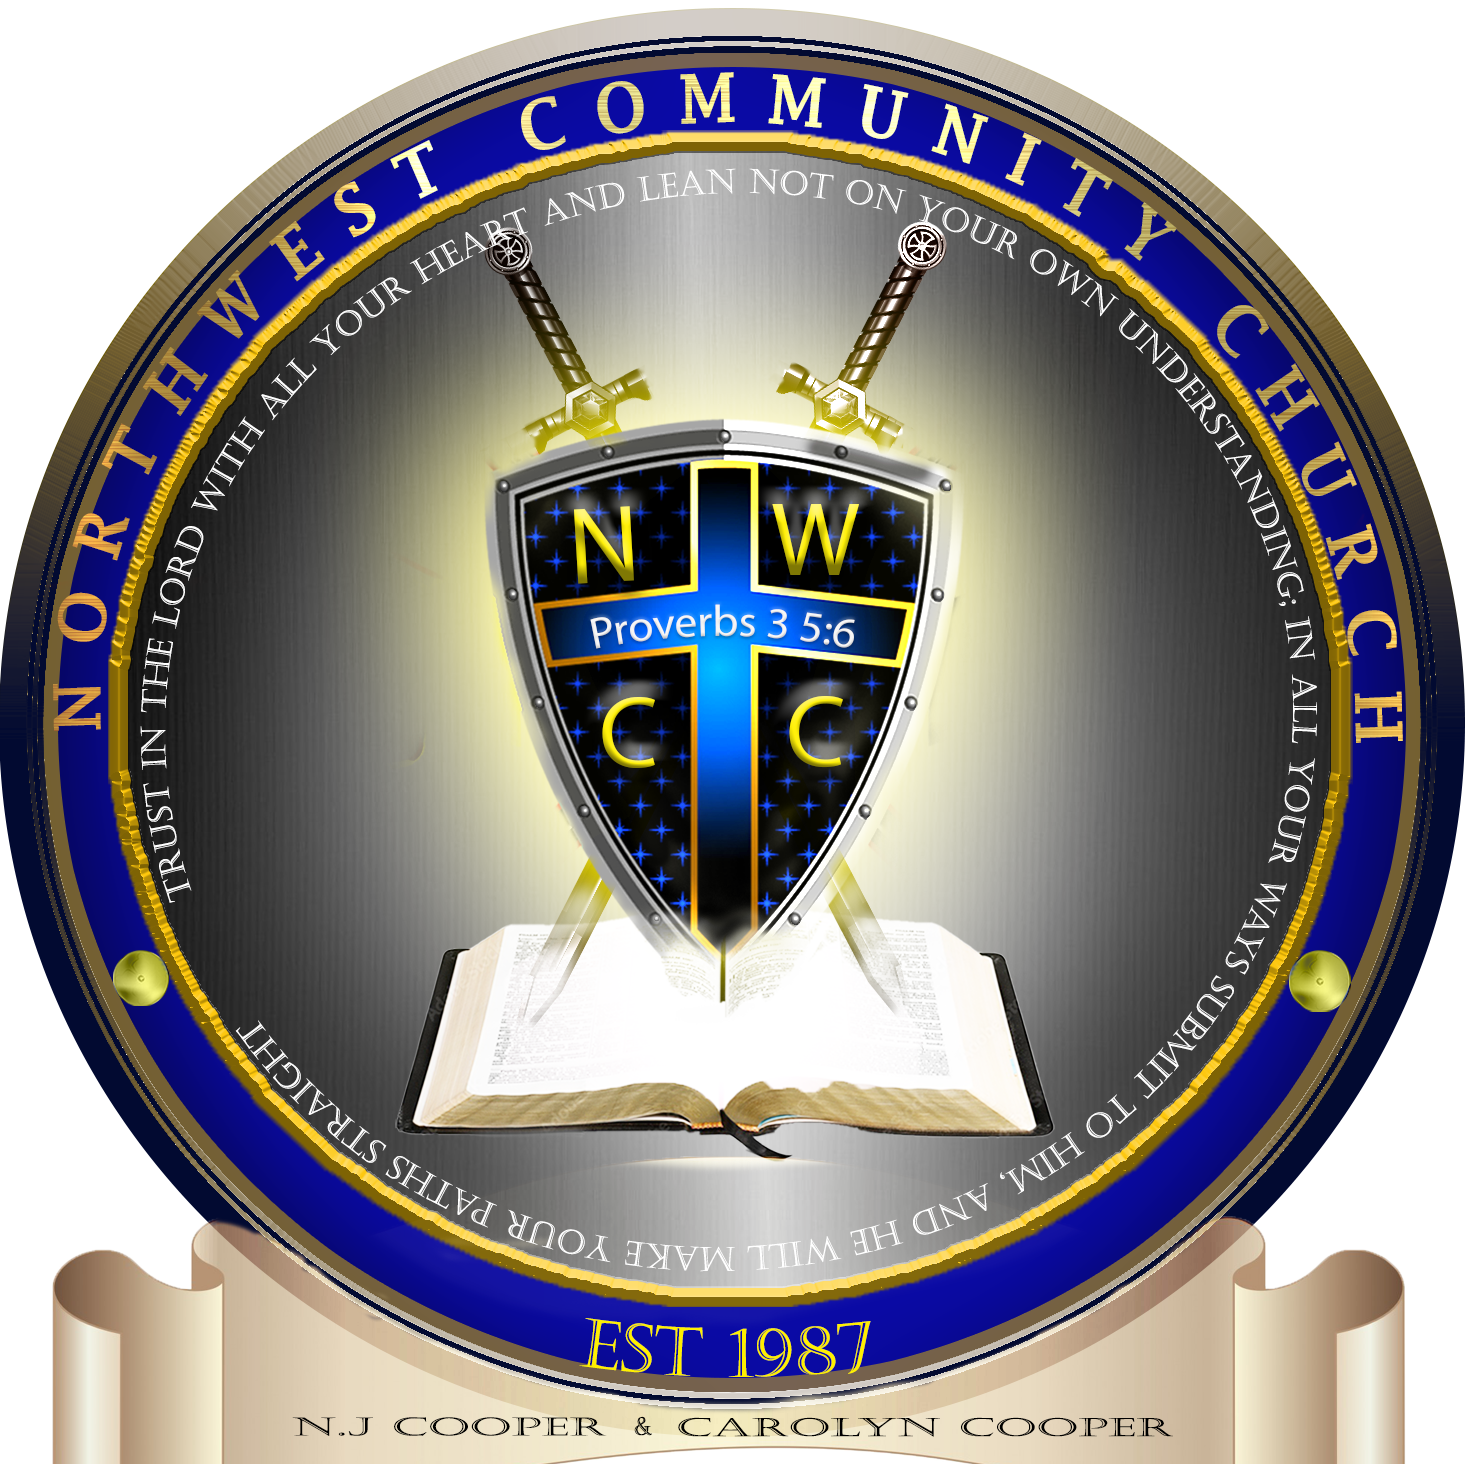 1st Northwest Community Church